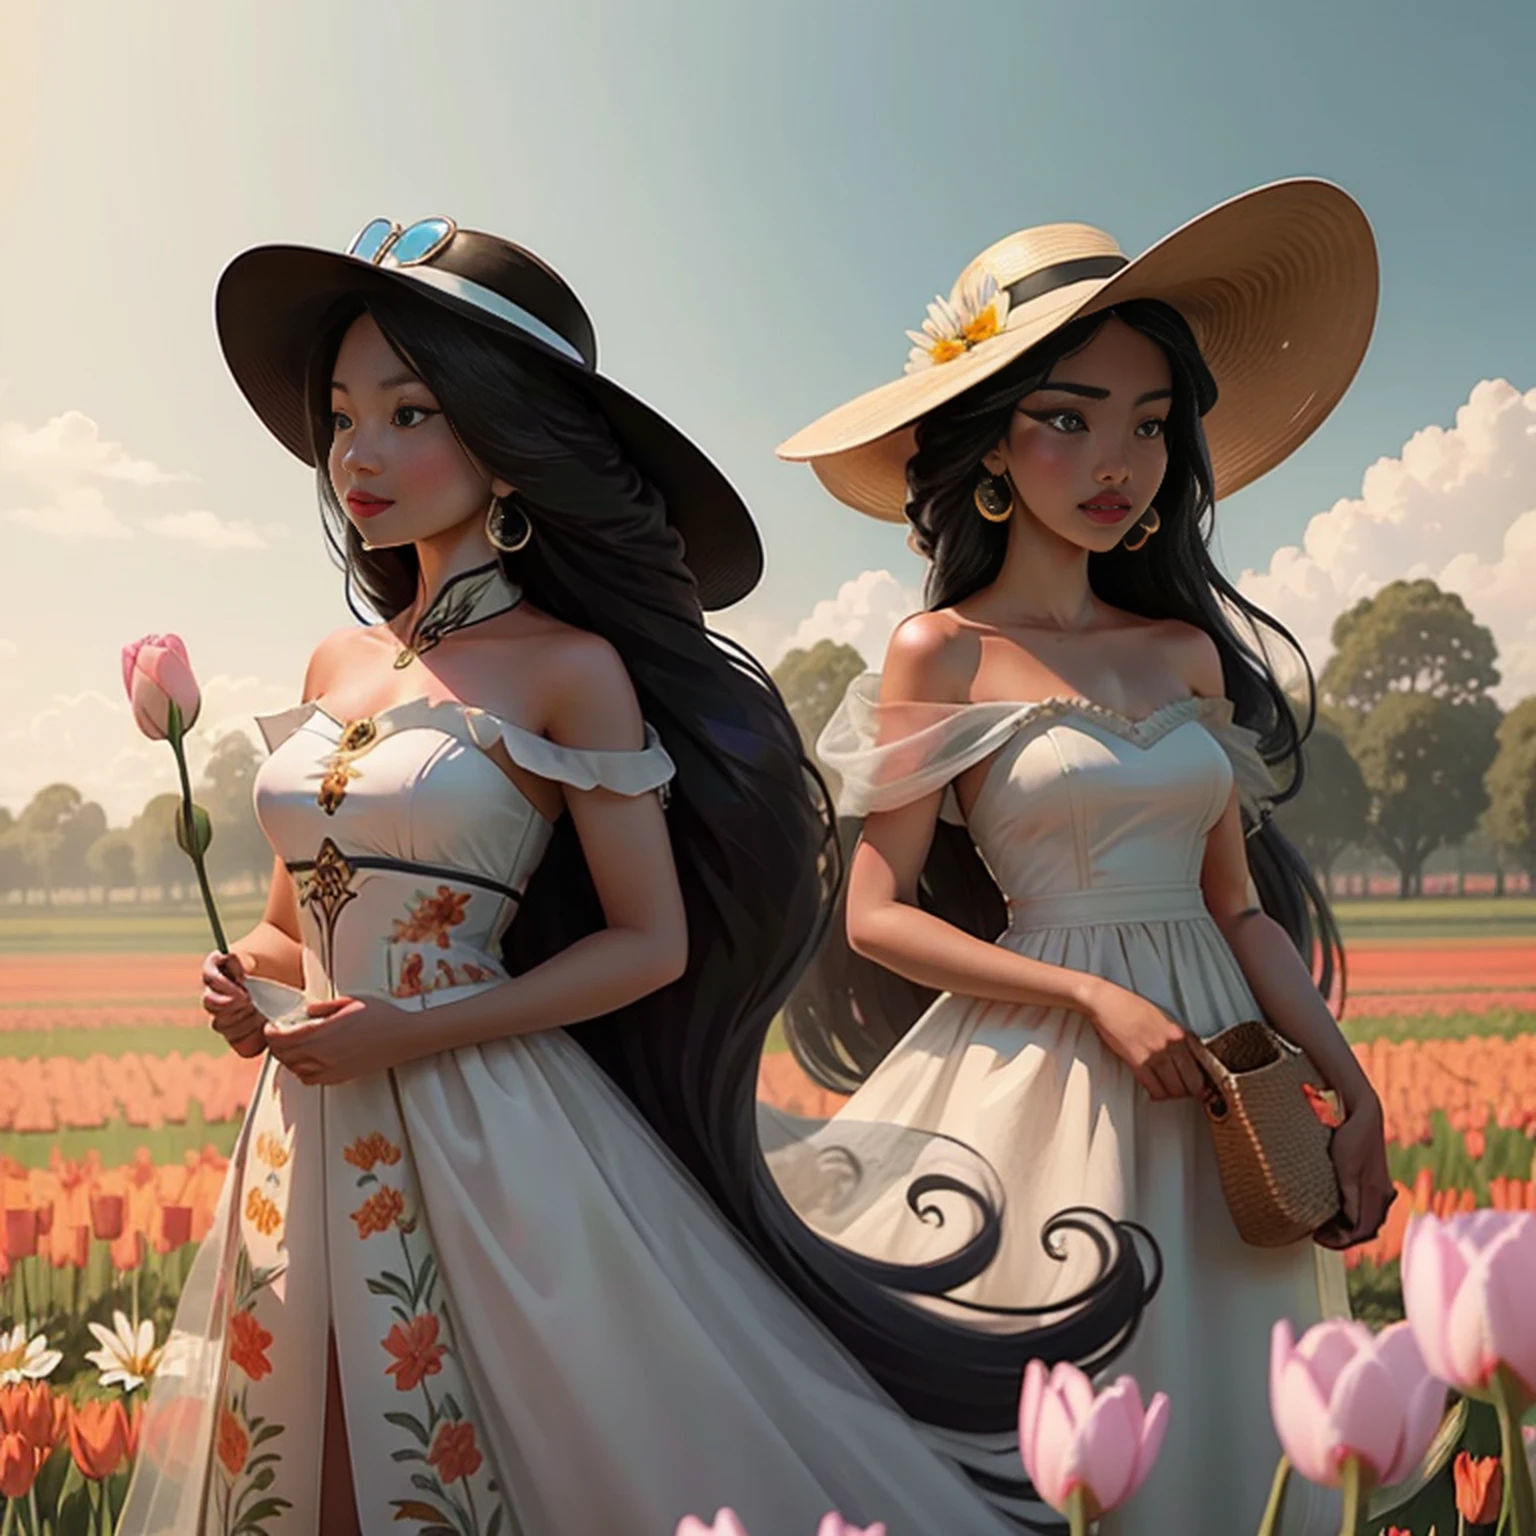 하얀 홀터넥 드레스를 입고 태양모자를 쓴 아름다운 중국 여성이 튤립 밭에 서 있습니다., 긴 웨이브 갈색 머리, 선글라스 착용, 키가 크고 마른 체형, 아름다운, 미묘한 미소, 튤립밭에 서서, 꽃밭에 서서, 튤립 밭에 서있는 여자, girl 꽃밭에 서서, 꽃이 있는 들판에 서서,  꽃밭에서, com 꽃밭 em primeiro plano, 꽃밭에서, 꽃밭, 꽃밭에 서있는 소녀